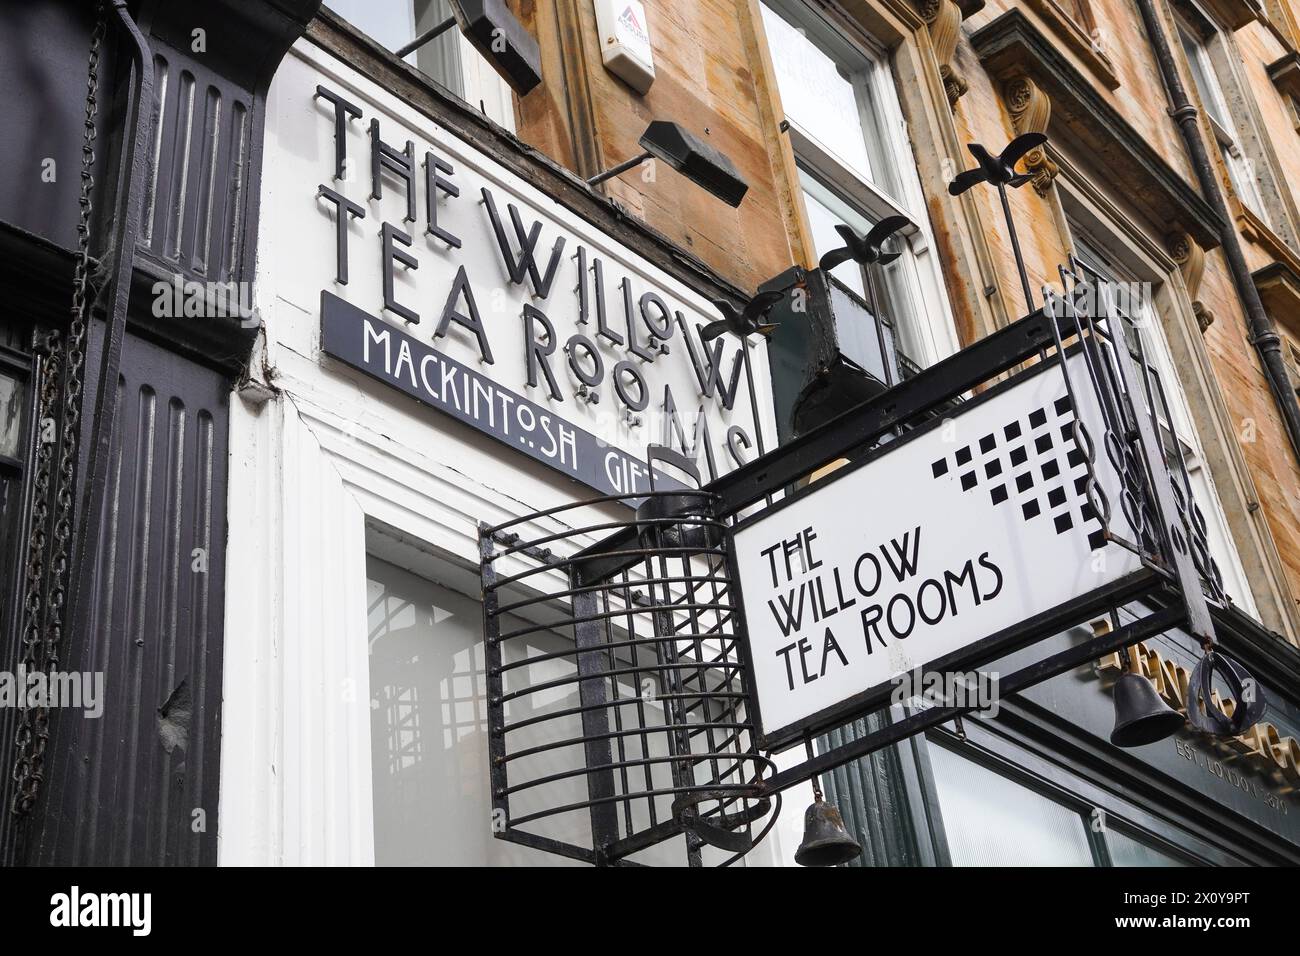 Signalisation pour les salons de thé Willow, Buchanan Street, Glasgow, Écosse, Royaume-Uni, célèbre pour être dans le style de Charles Rennie Macintosh. Banque D'Images